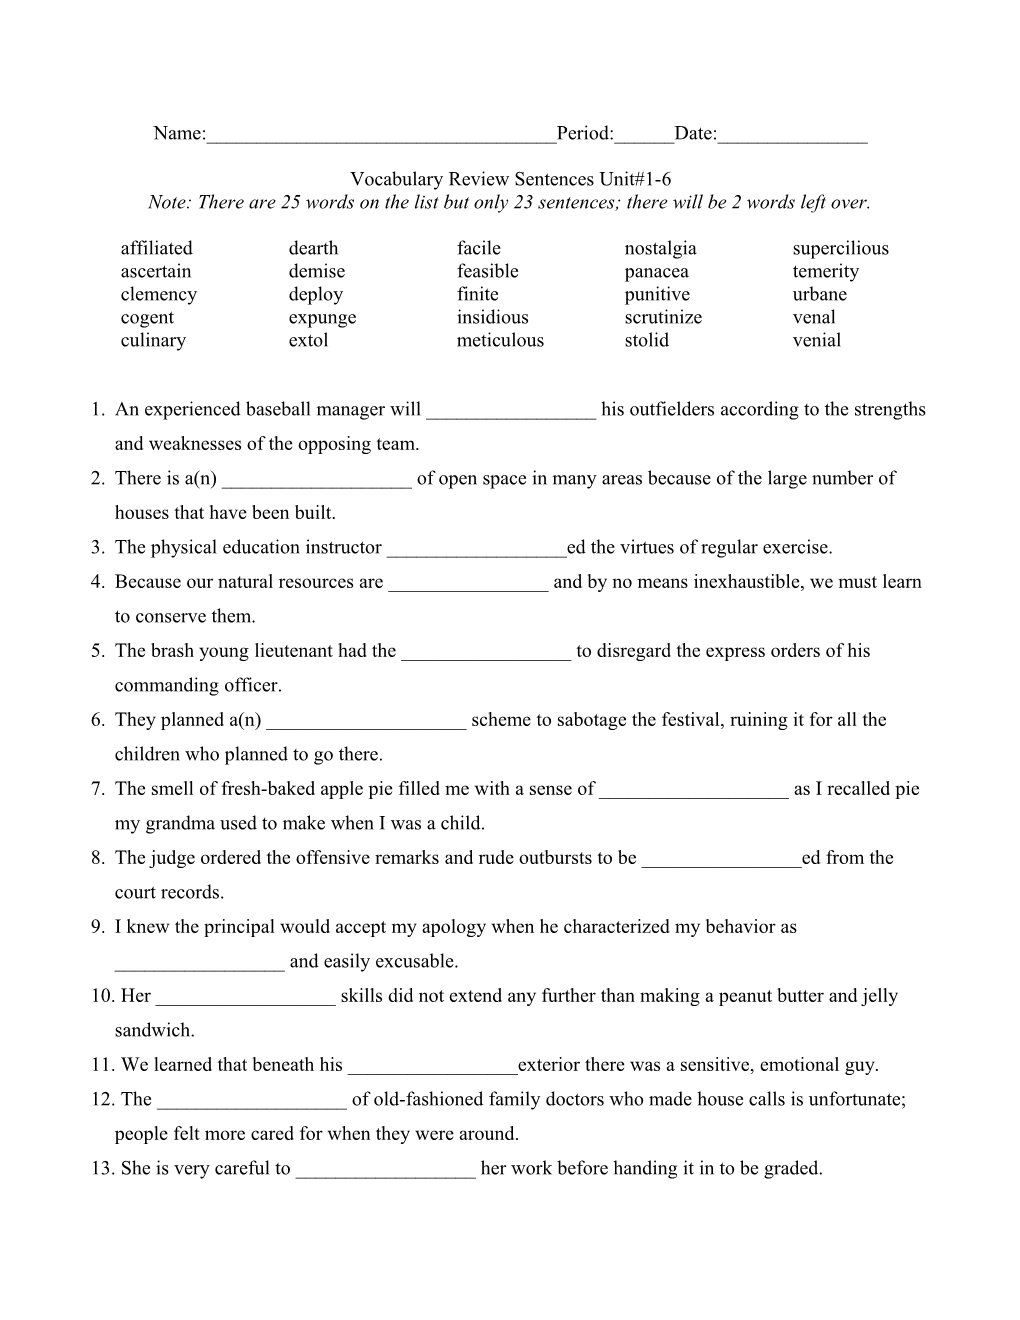 Vocabulary Review Sentences Unit#1-6